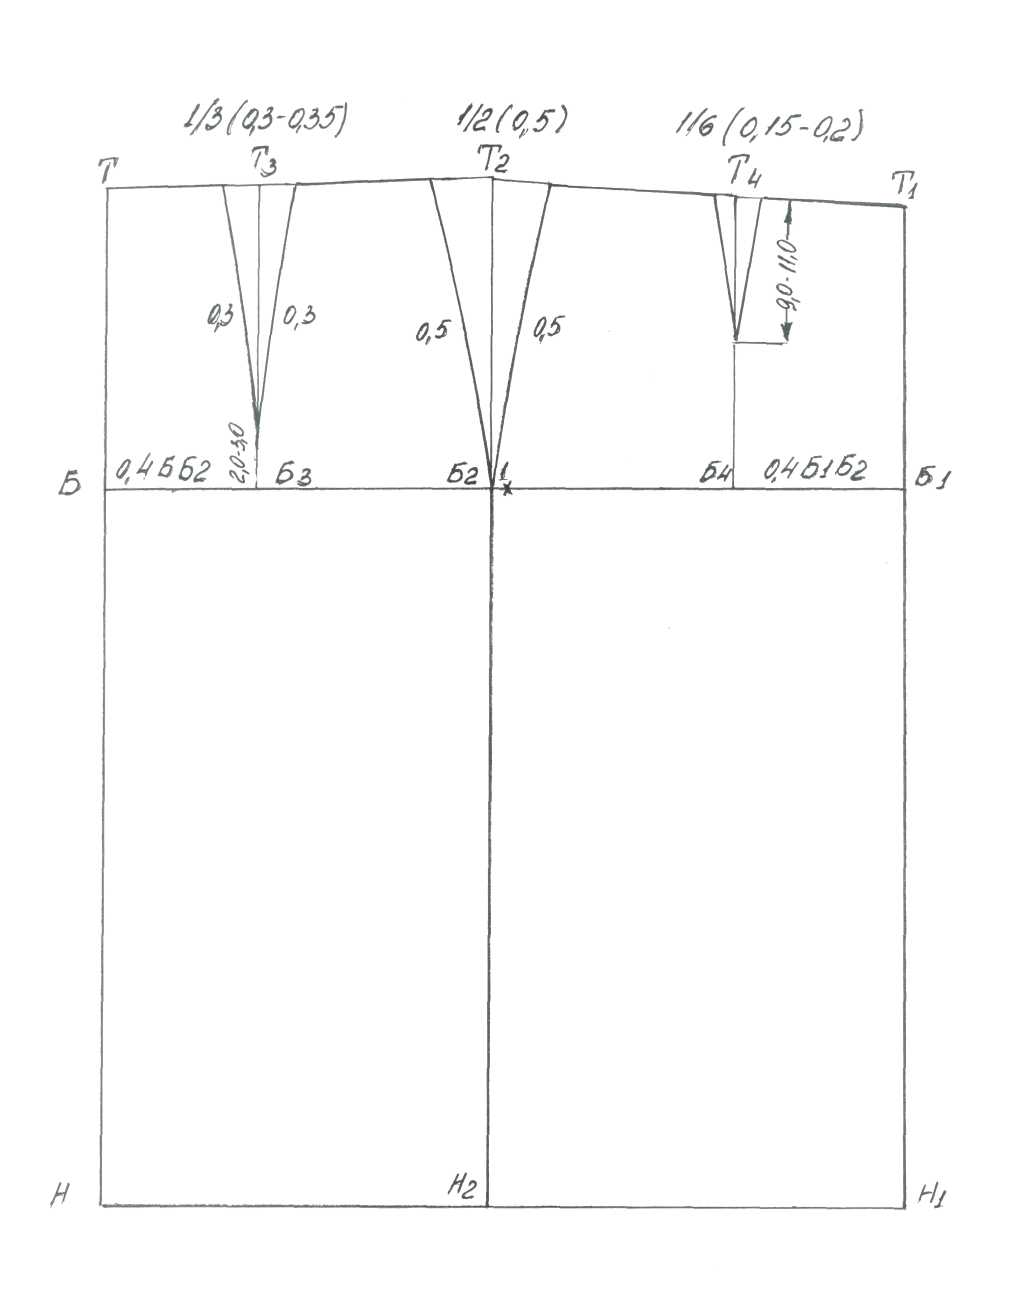 Методическая разработка на тему Построение базовой конструкции прямой юбки на типовую и индивидуальную фигуру